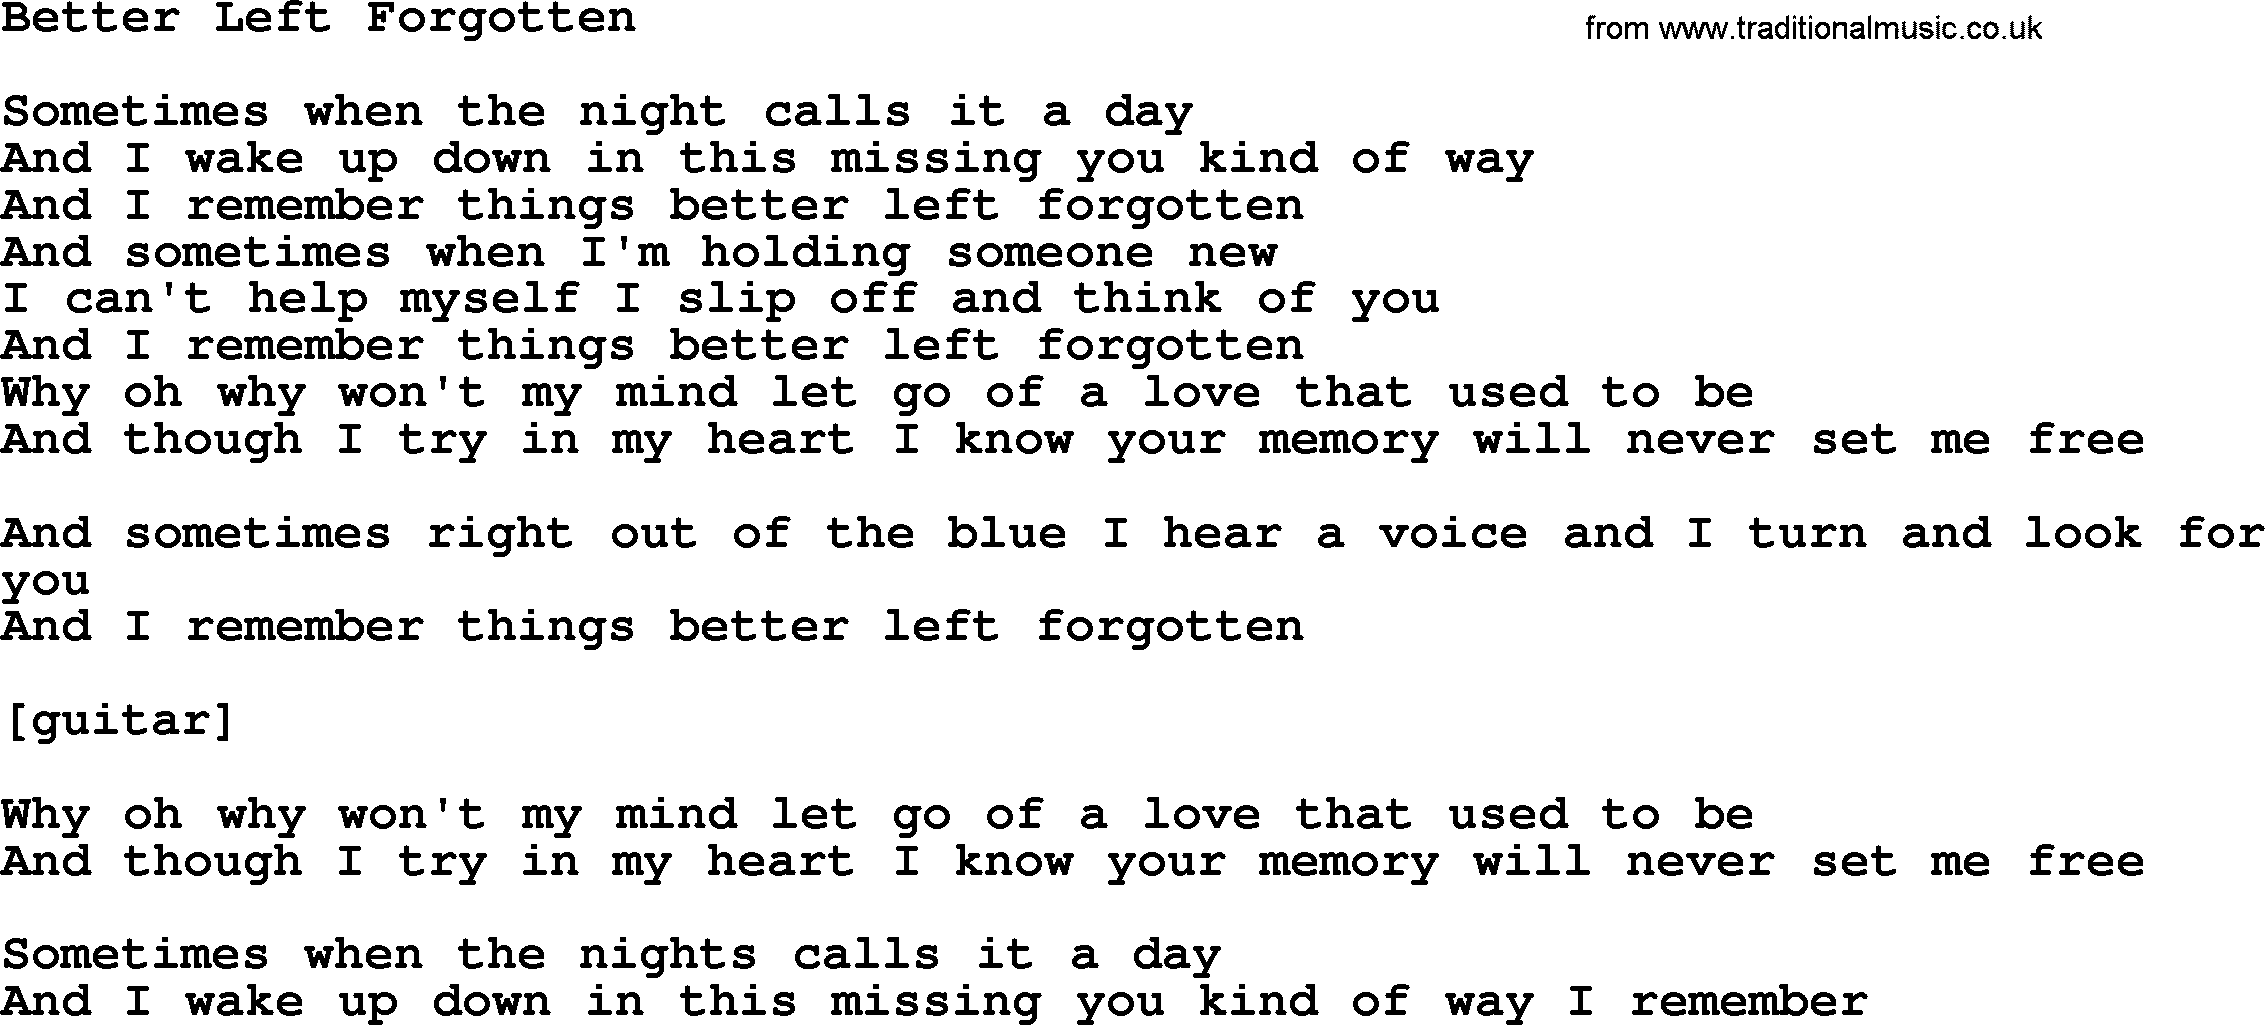 Willie Nelson song: Better Left Forgotten lyrics